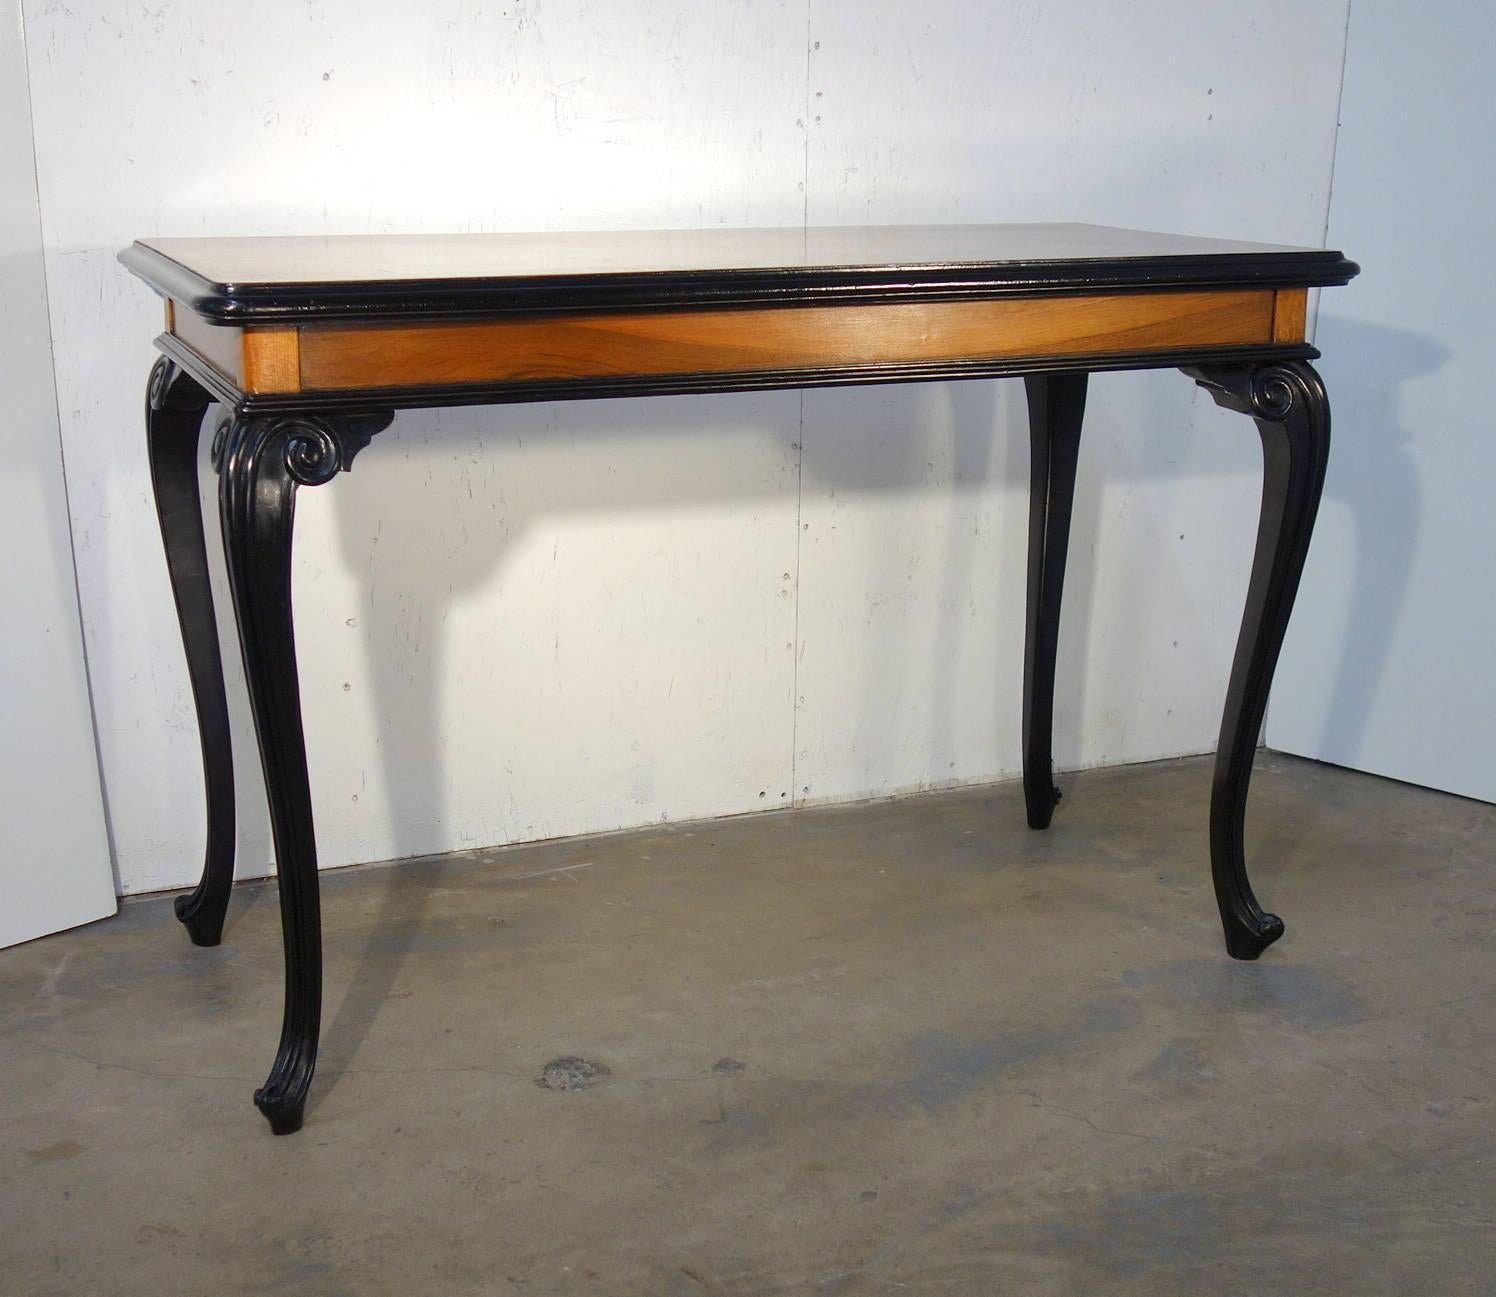 Mitteltisch im lombardischen Stil aus Nussbaum mit vier geschwungenen Beinen und Ebenholzprofilen. Wunderbare moderne Linie, sauber und elegant. 
Stilvoll für einen kleinen Eingangstisch oder Schreibtisch.
Maße: 47